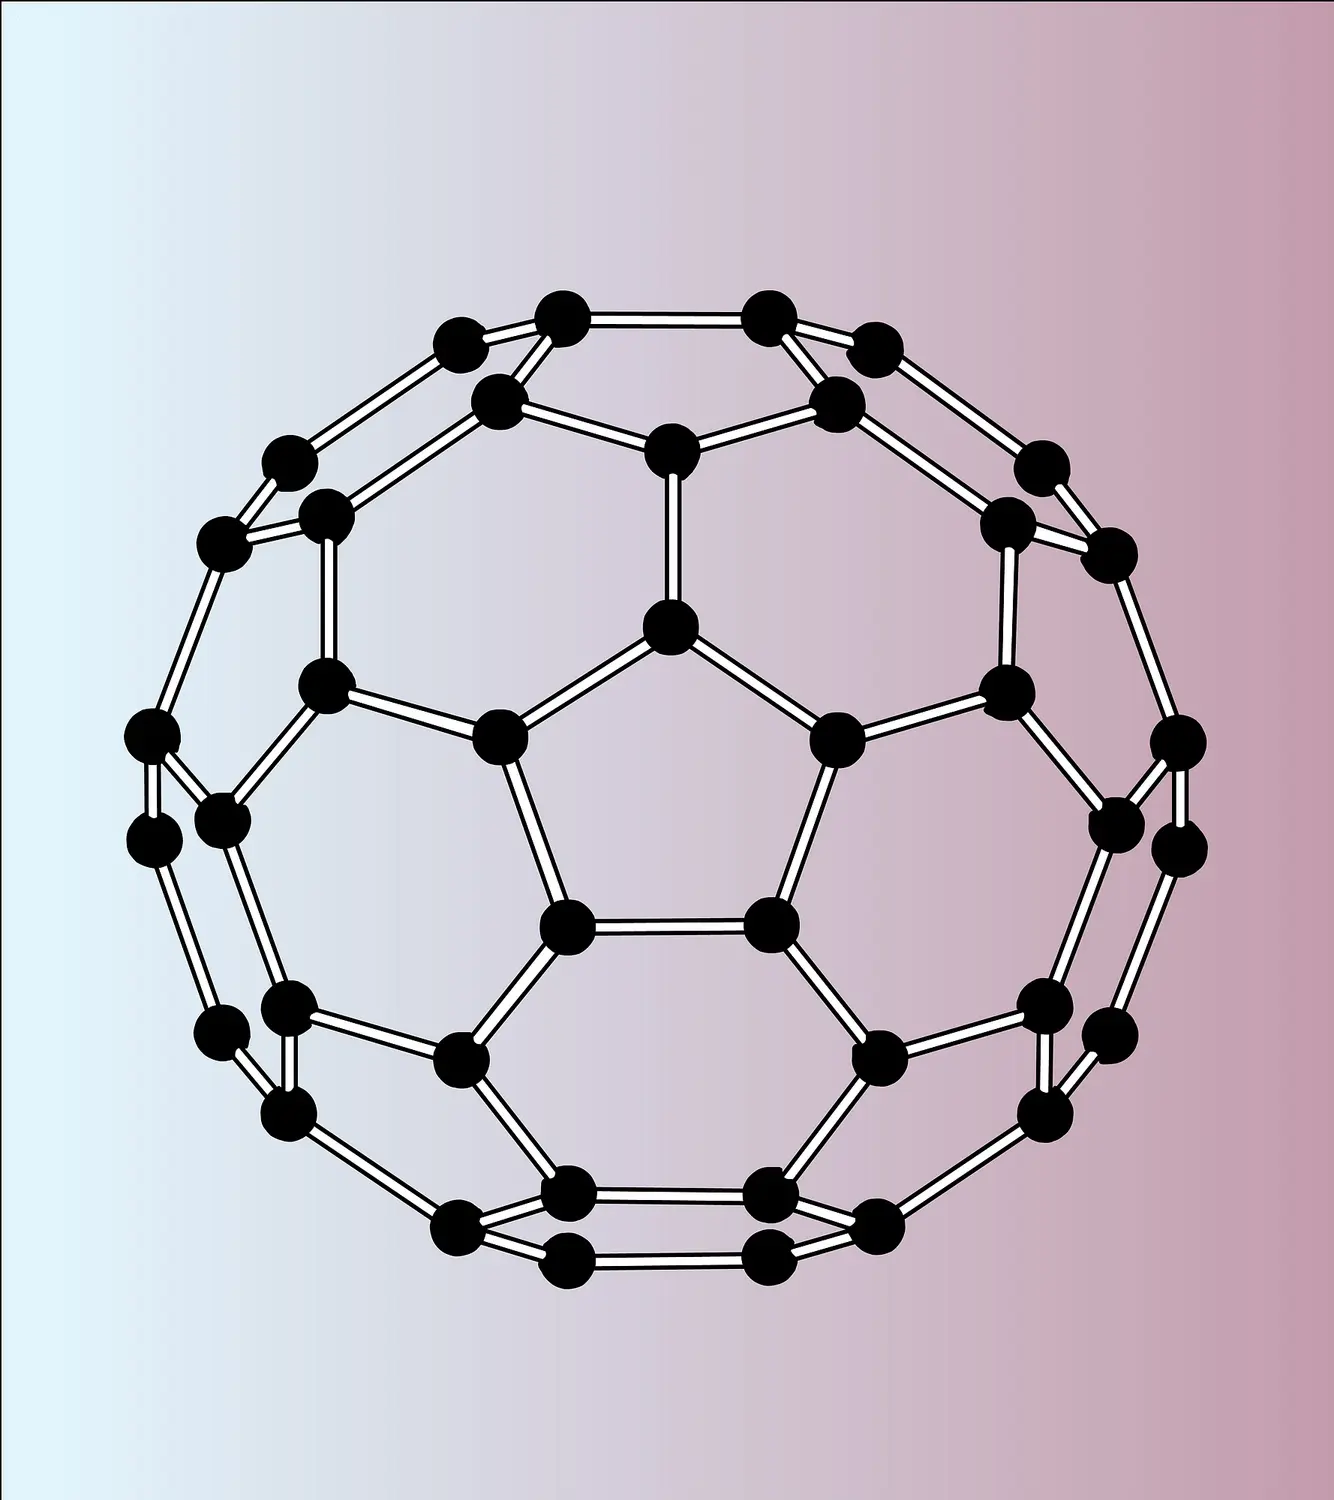 Agrégats en physico-chimie: géométrie du ballon de football